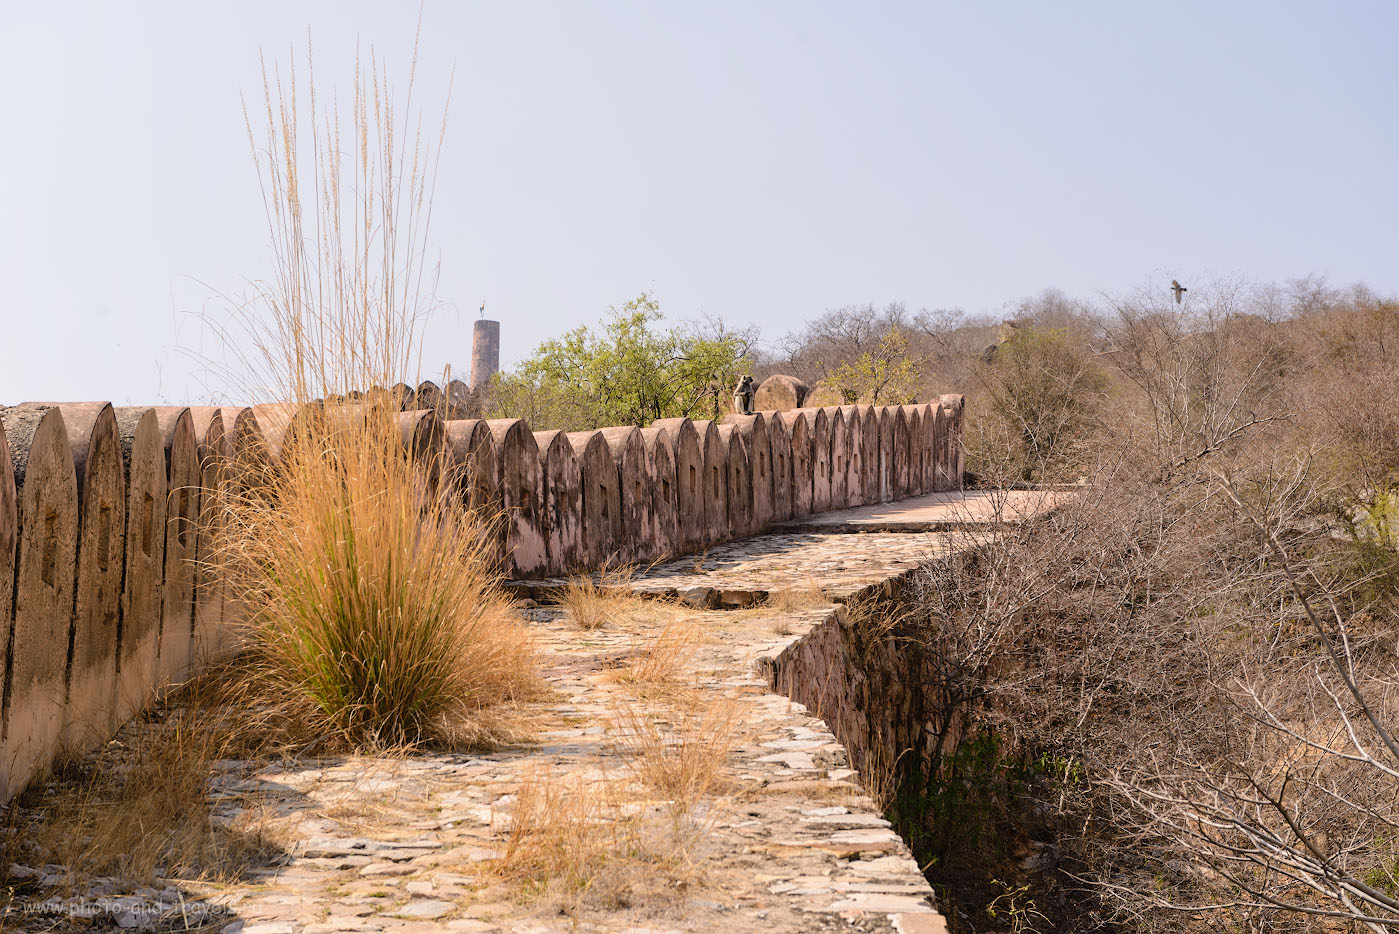 Фото 13. Обезьяна на крепостной стене. Отзыв о восхождении к форту Джайгарх в Джайпуре. 1/250, -0.33, 8.0, 100, 70.